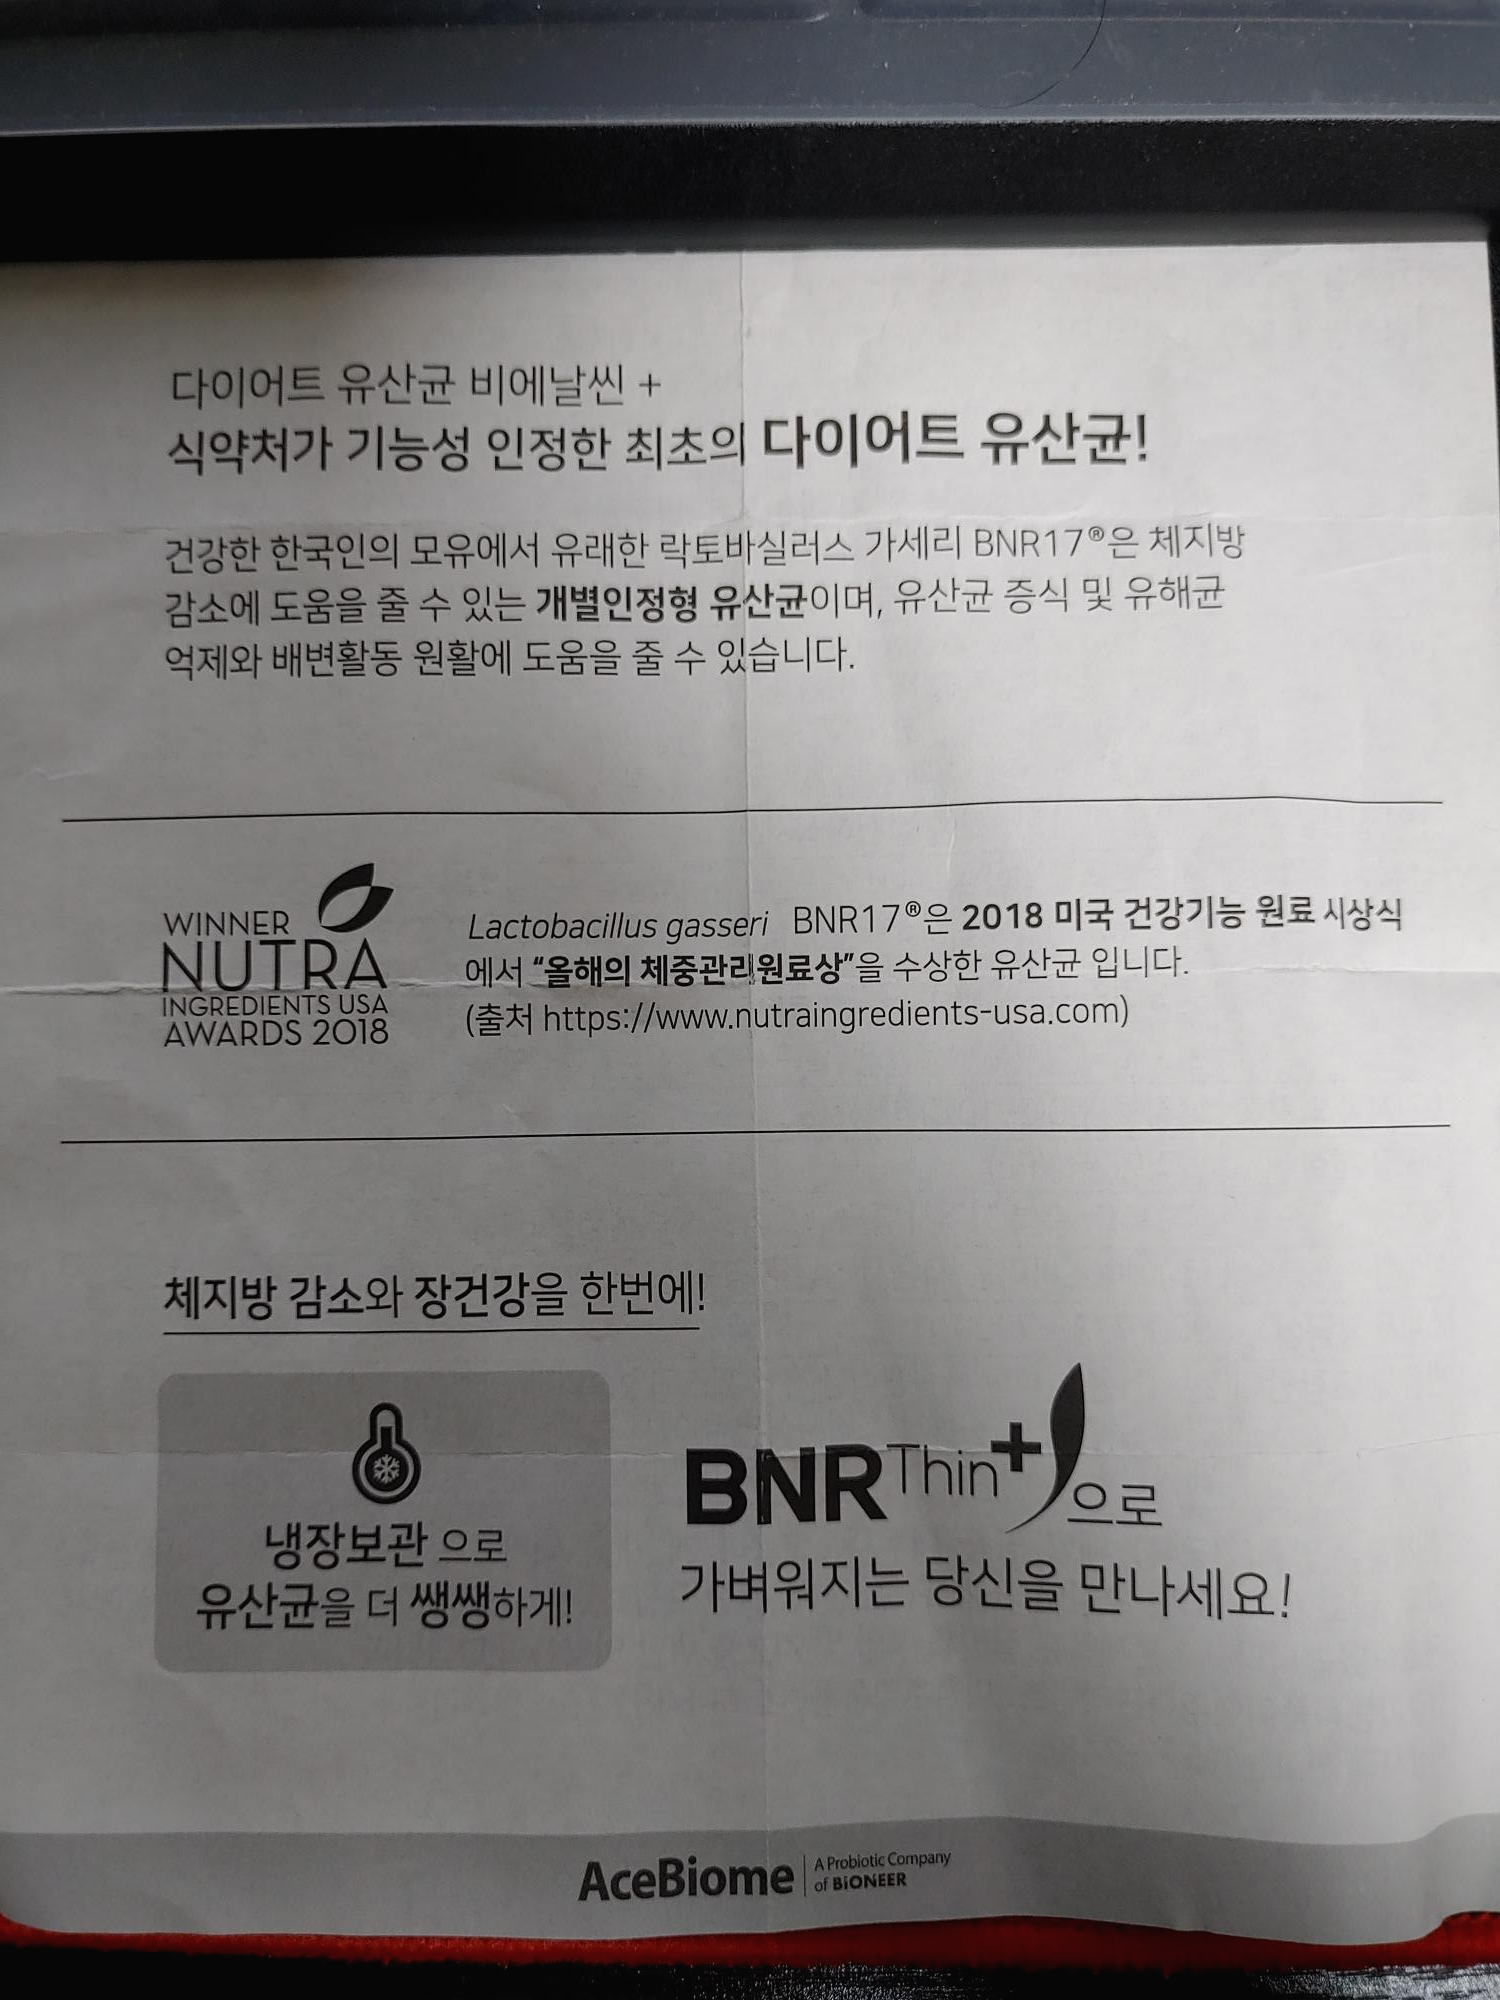 락토바실러스 가세리 BNR17 건강기능식품 비에날씬플러스